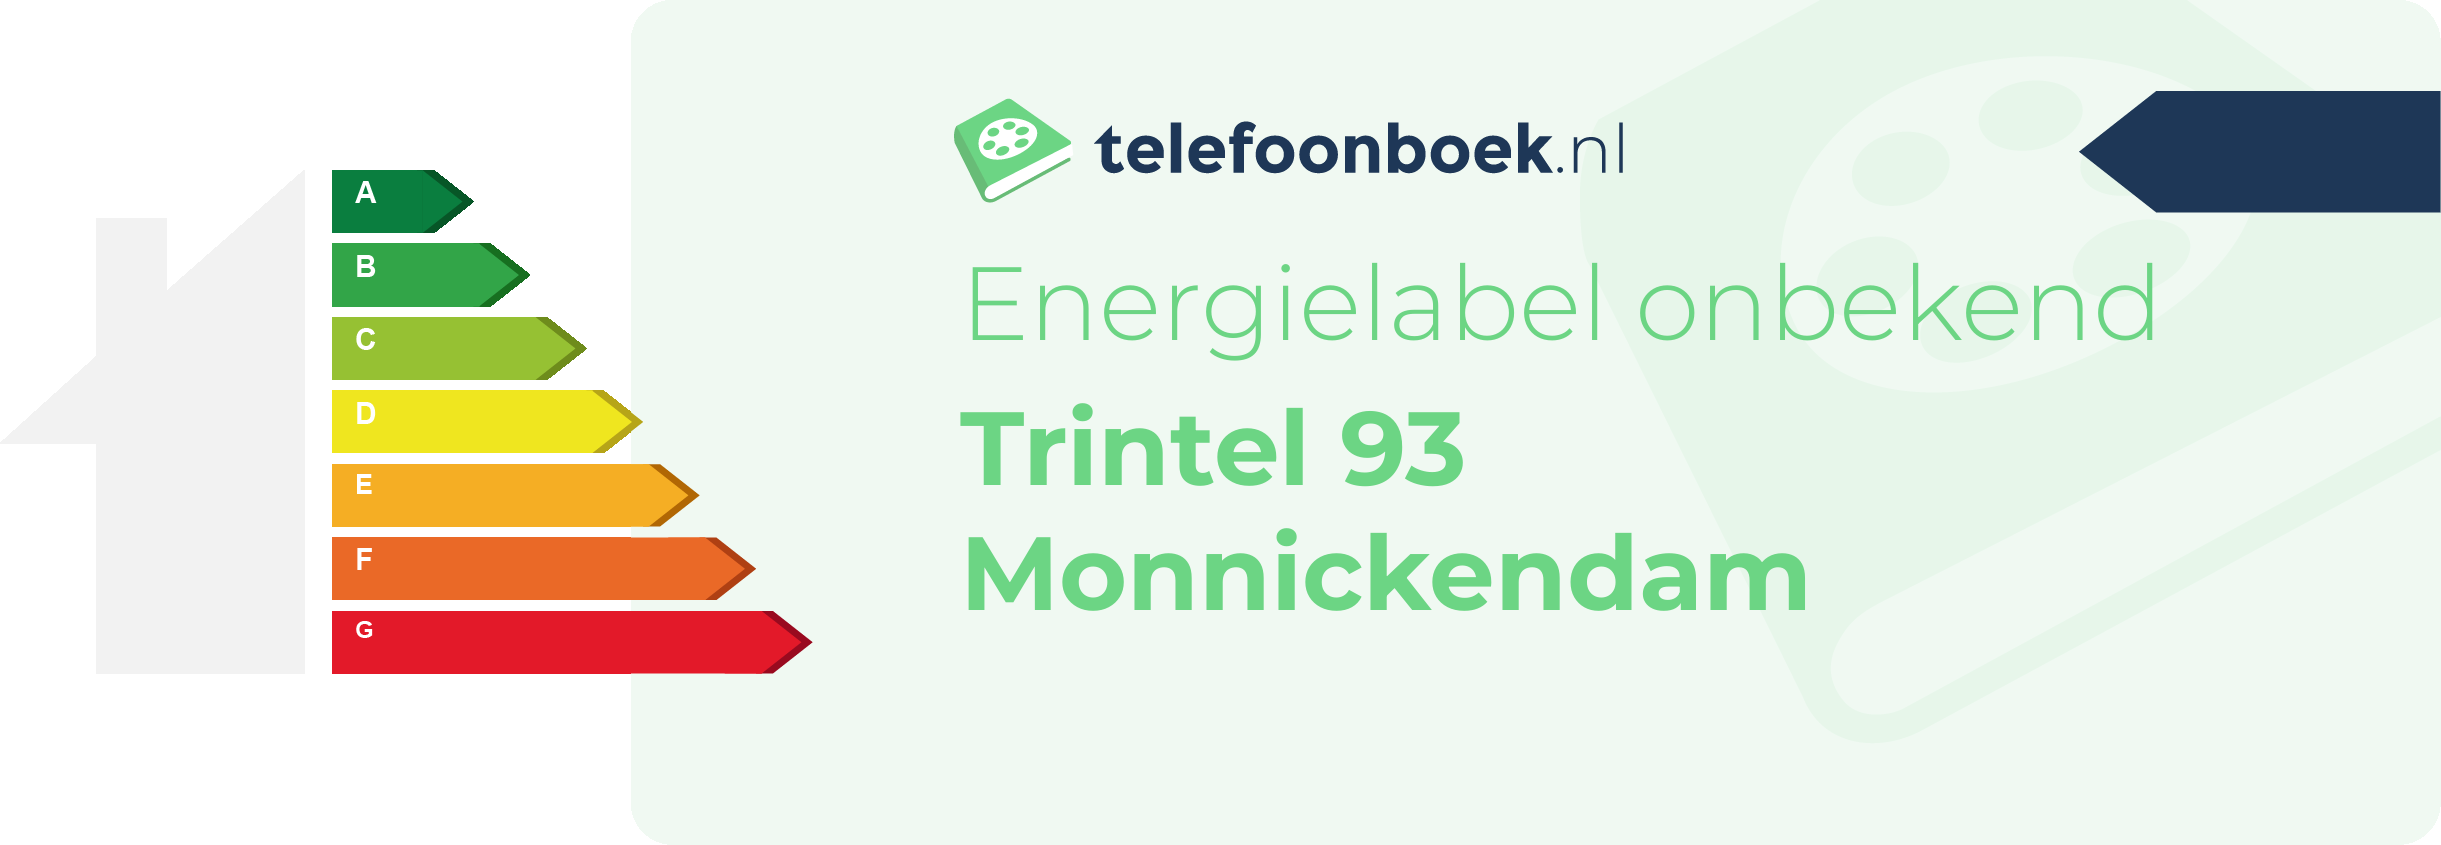 Energielabel Trintel 93 Monnickendam